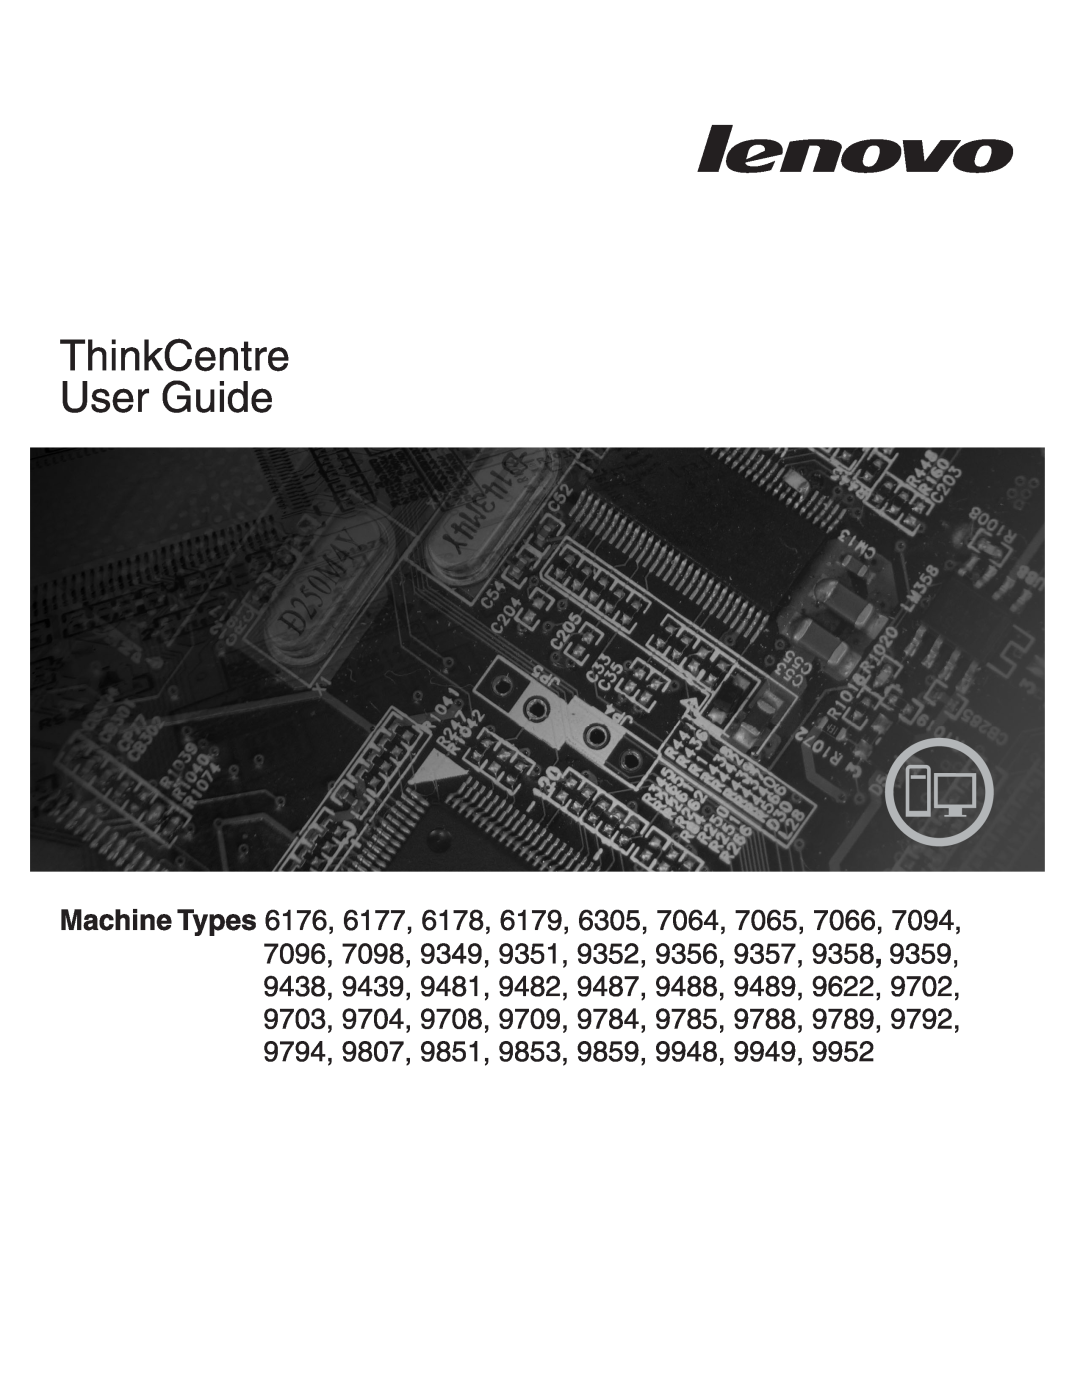 Lenovo 6176, 6177, 7064, 7094, 7065, 7066, 6178 manual 